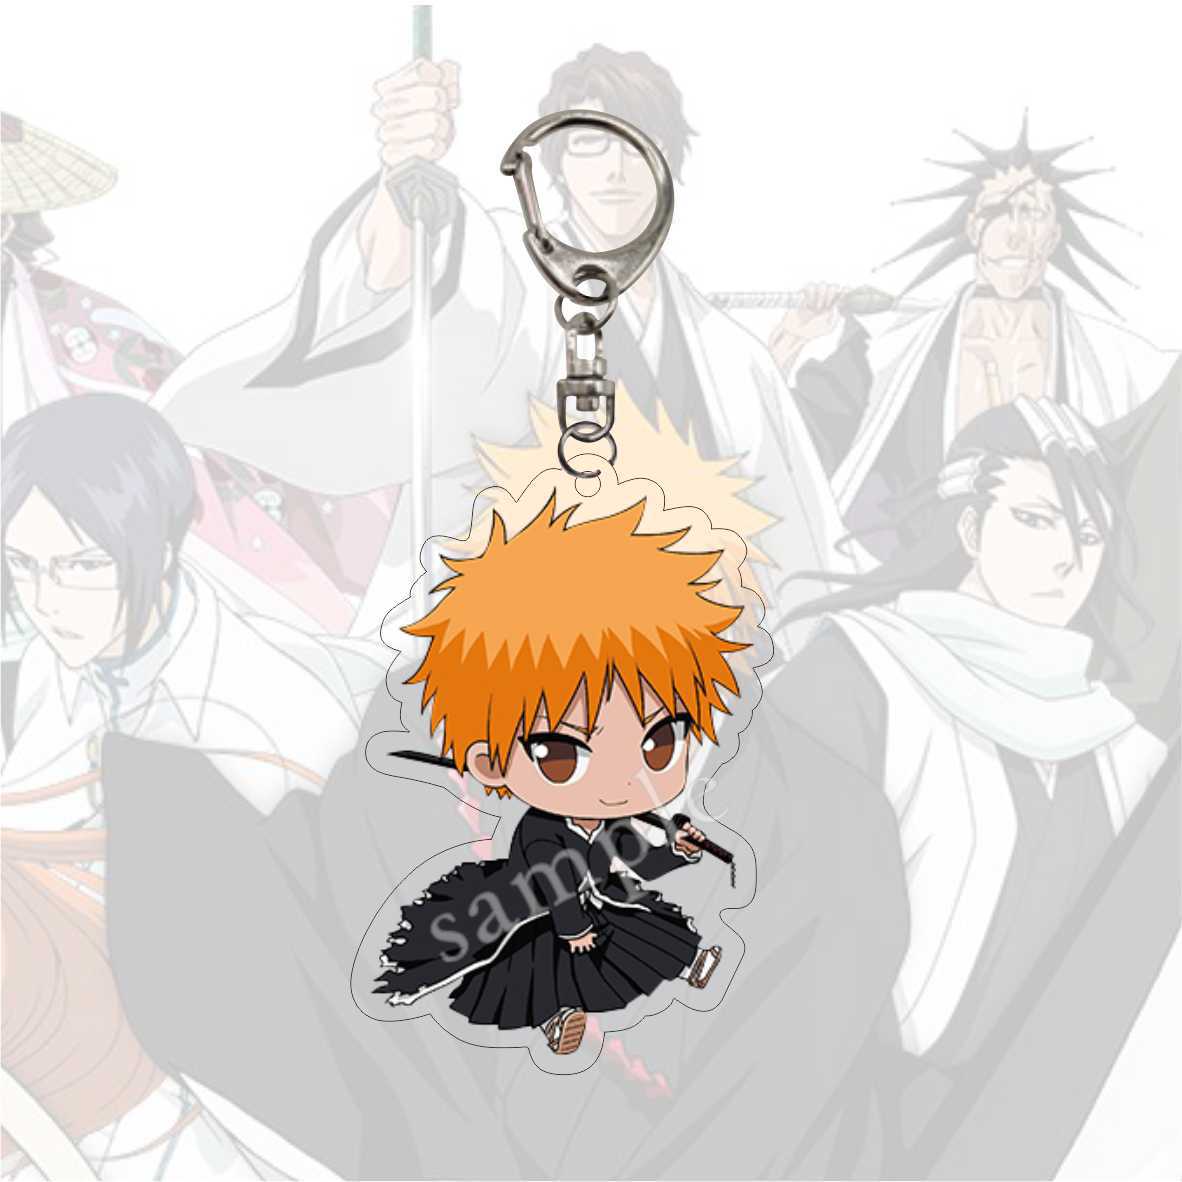 Anime Bleach Acrylic Keychain Fashion Kurosaki Ichigo Ishida Uryuu Kuchiki Rukia Cartoon Figures Key Chain Bag Charm Accessories